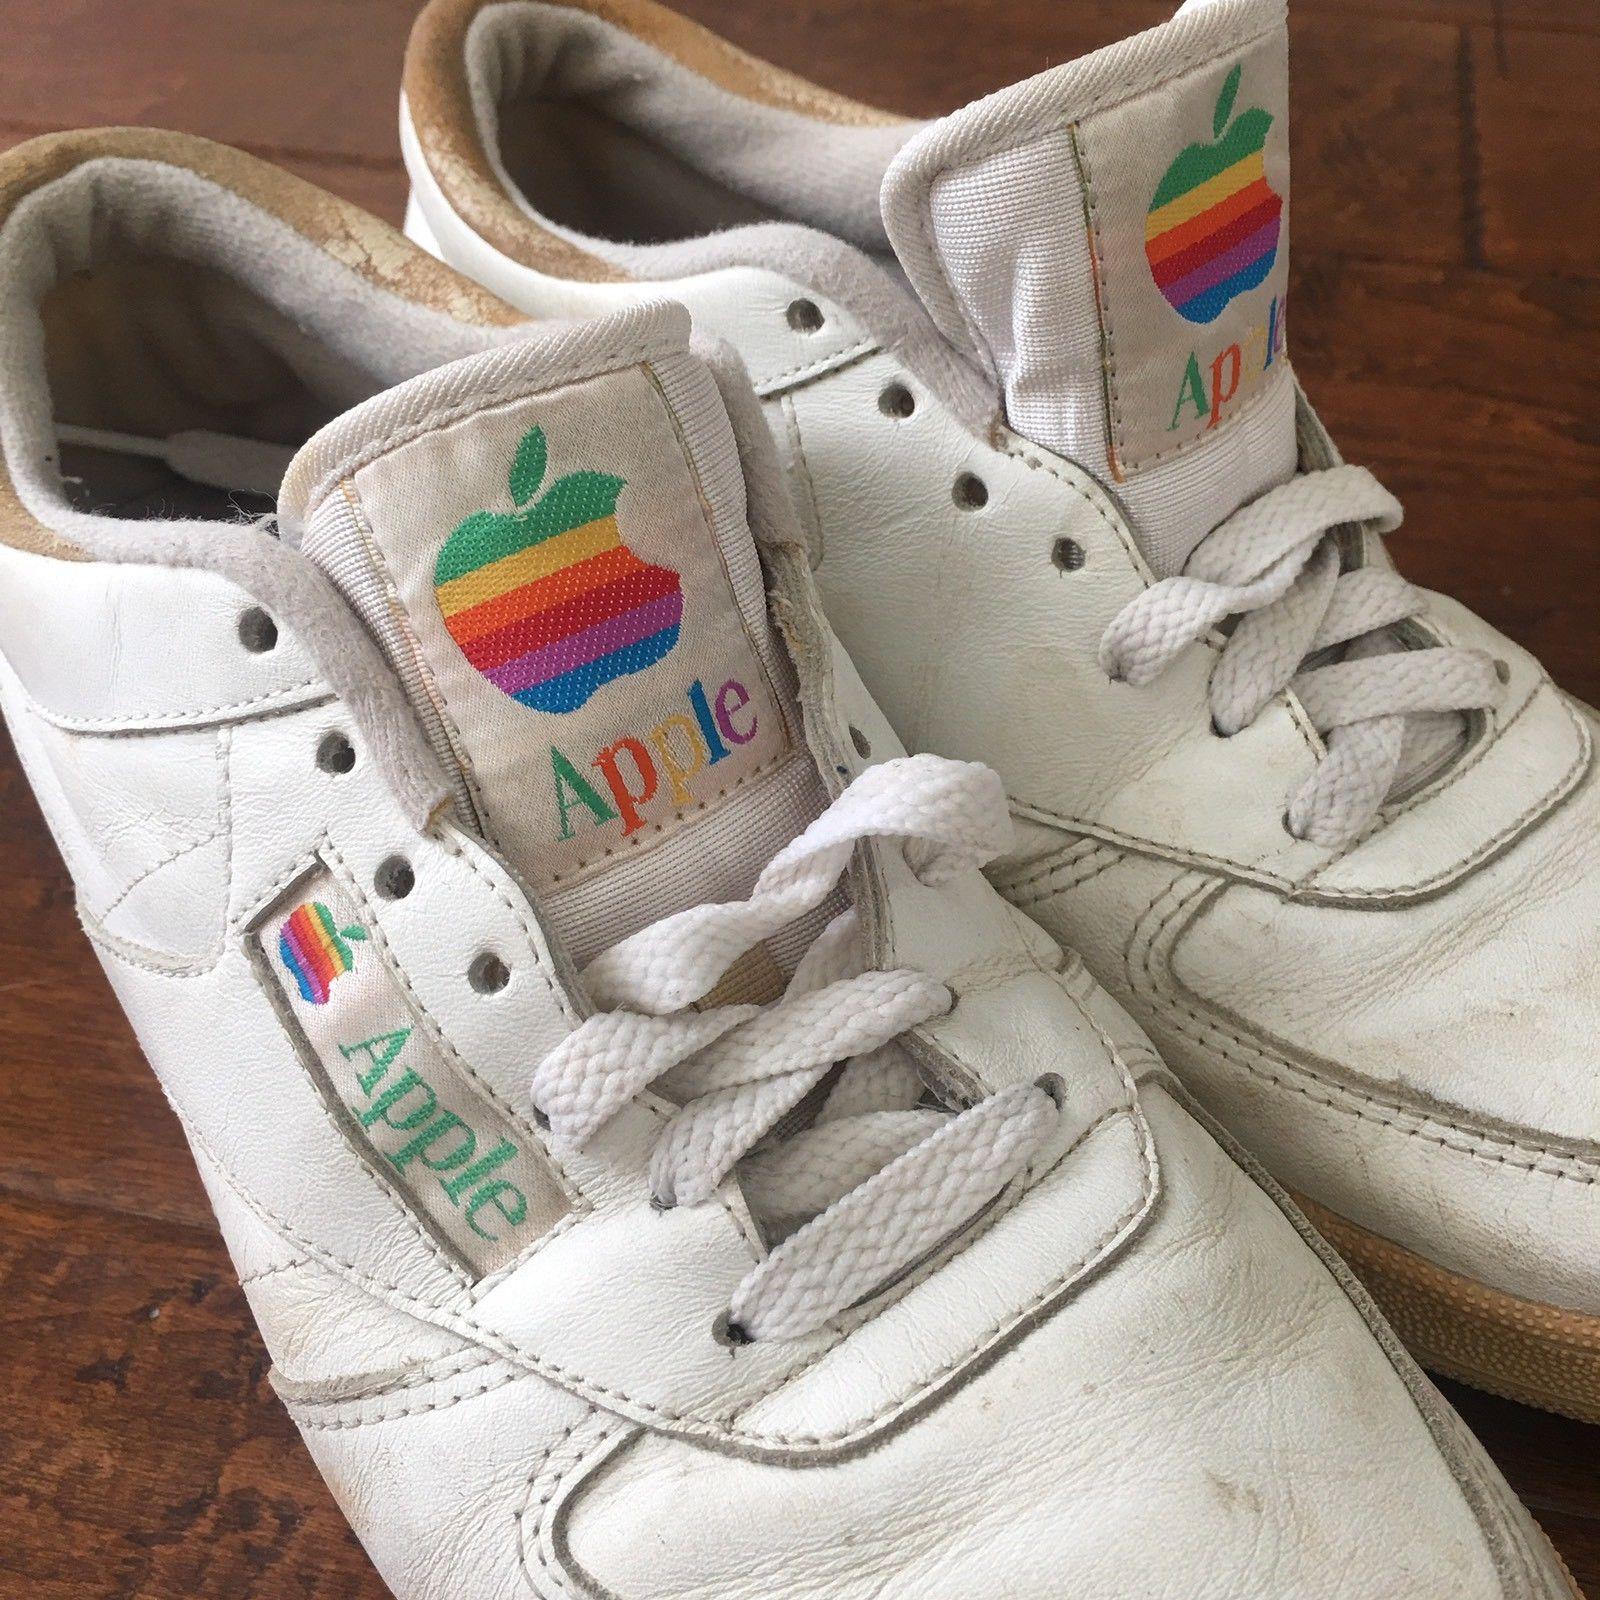 Genuine Apple Sneakers resurface 